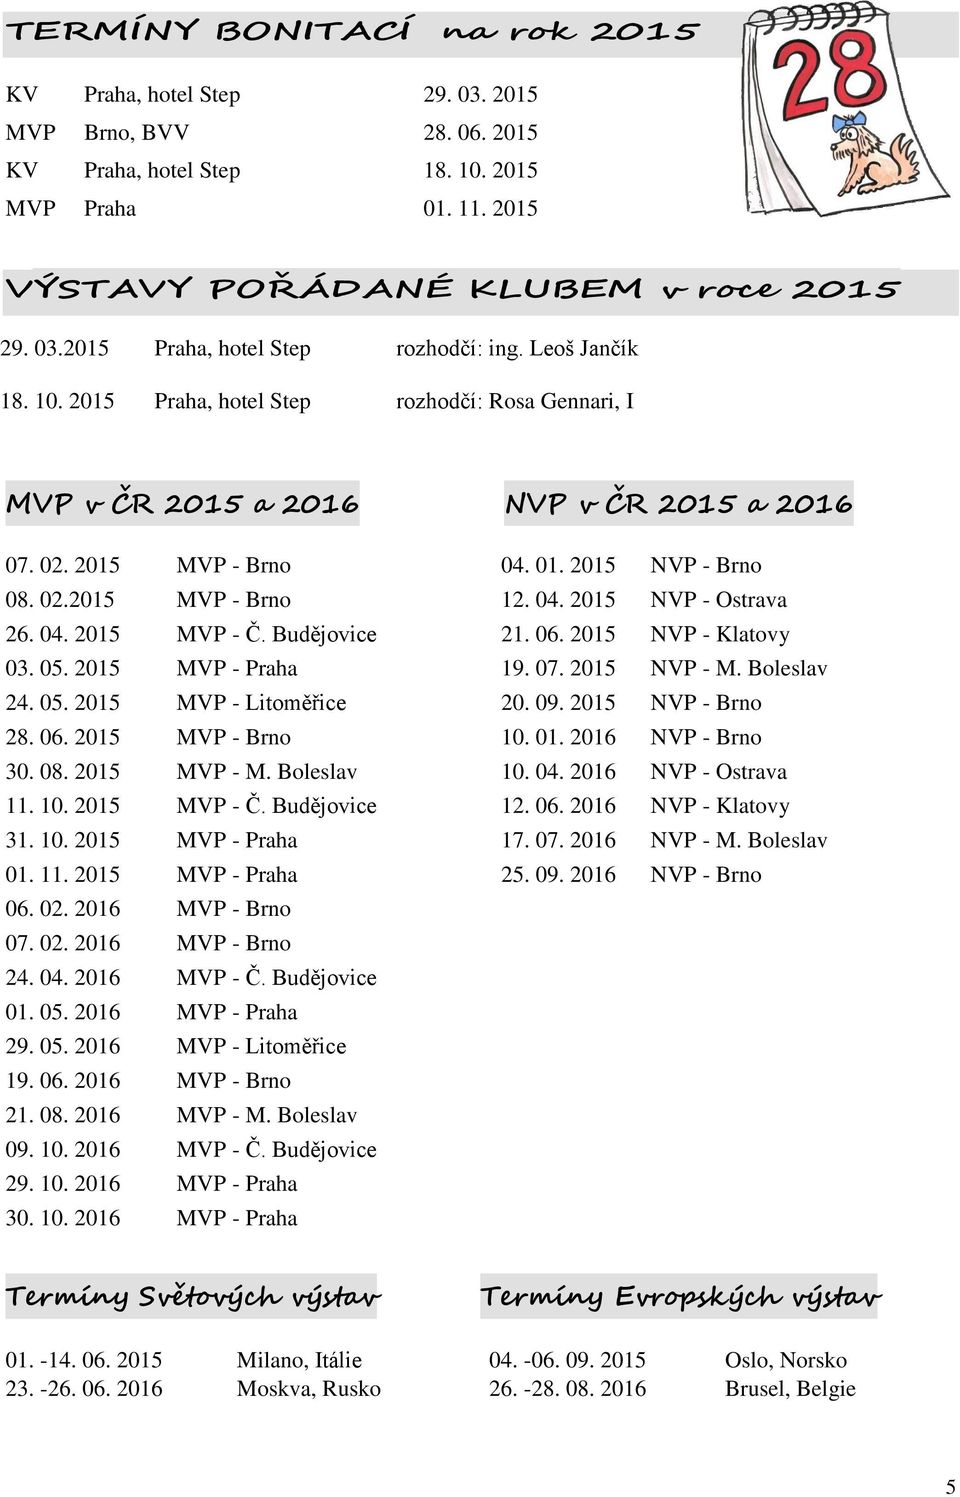 04. 2015 MVP - Č. Budějovice 21. 06. 2015 NVP - Klatovy 03. 05. 2015 MVP - Praha 19. 07. 2015 NVP - M. Boleslav 24. 05. 2015 MVP - Litoměřice 20. 09. 2015 NVP - Brno 28. 06. 2015 MVP - Brno 10. 01.